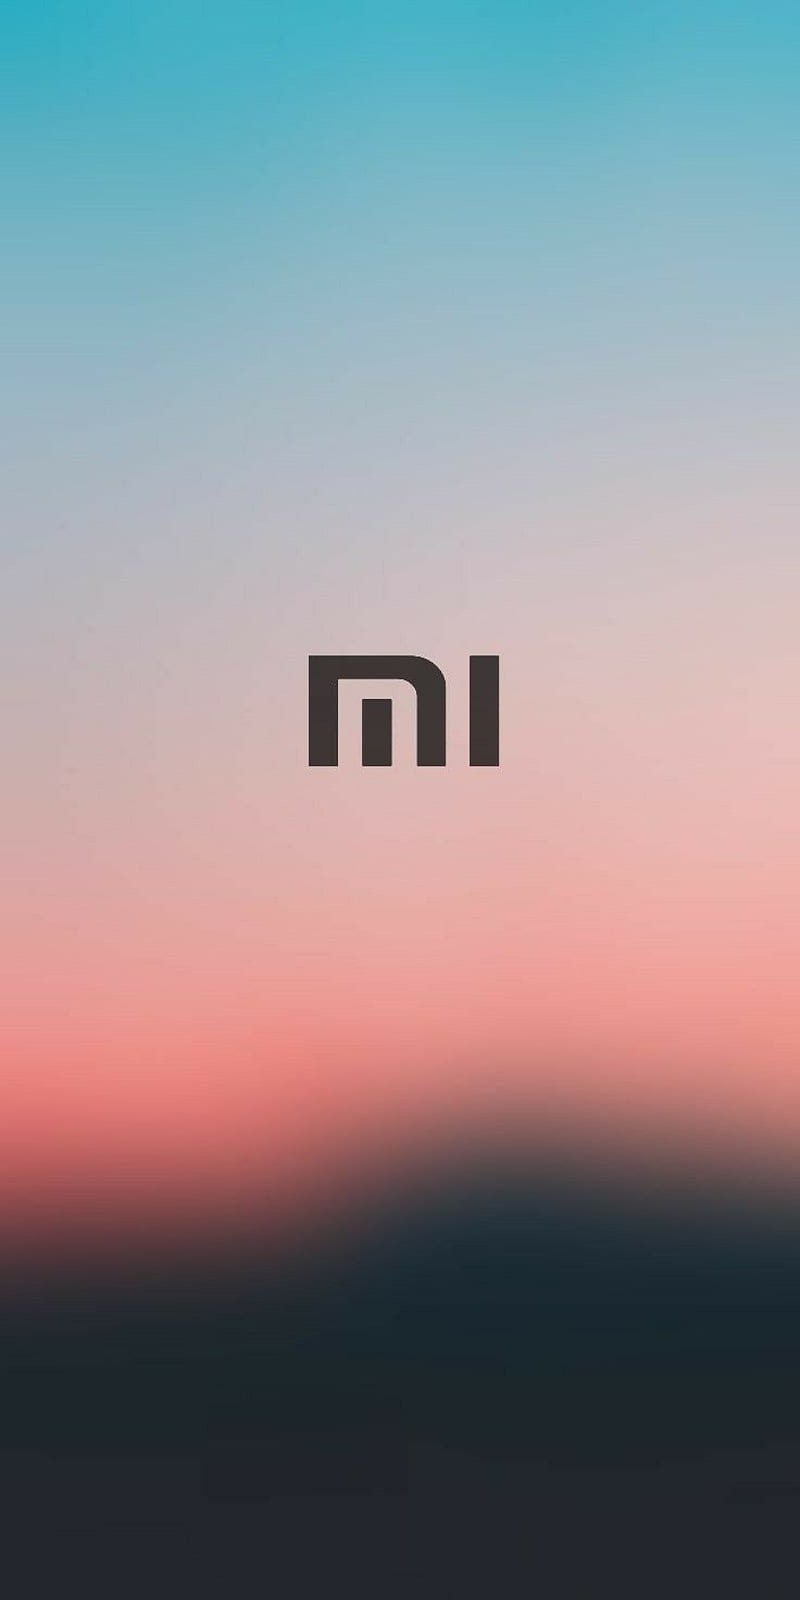 Thương hiệu Xiaomi với logo đa dạng màu sắc, tươi sáng cùng chất lượng HD sắc nét. Hãy khám phá ngay để hiểu rõ hơn về thương hiệu này và sự phong phú của nó.